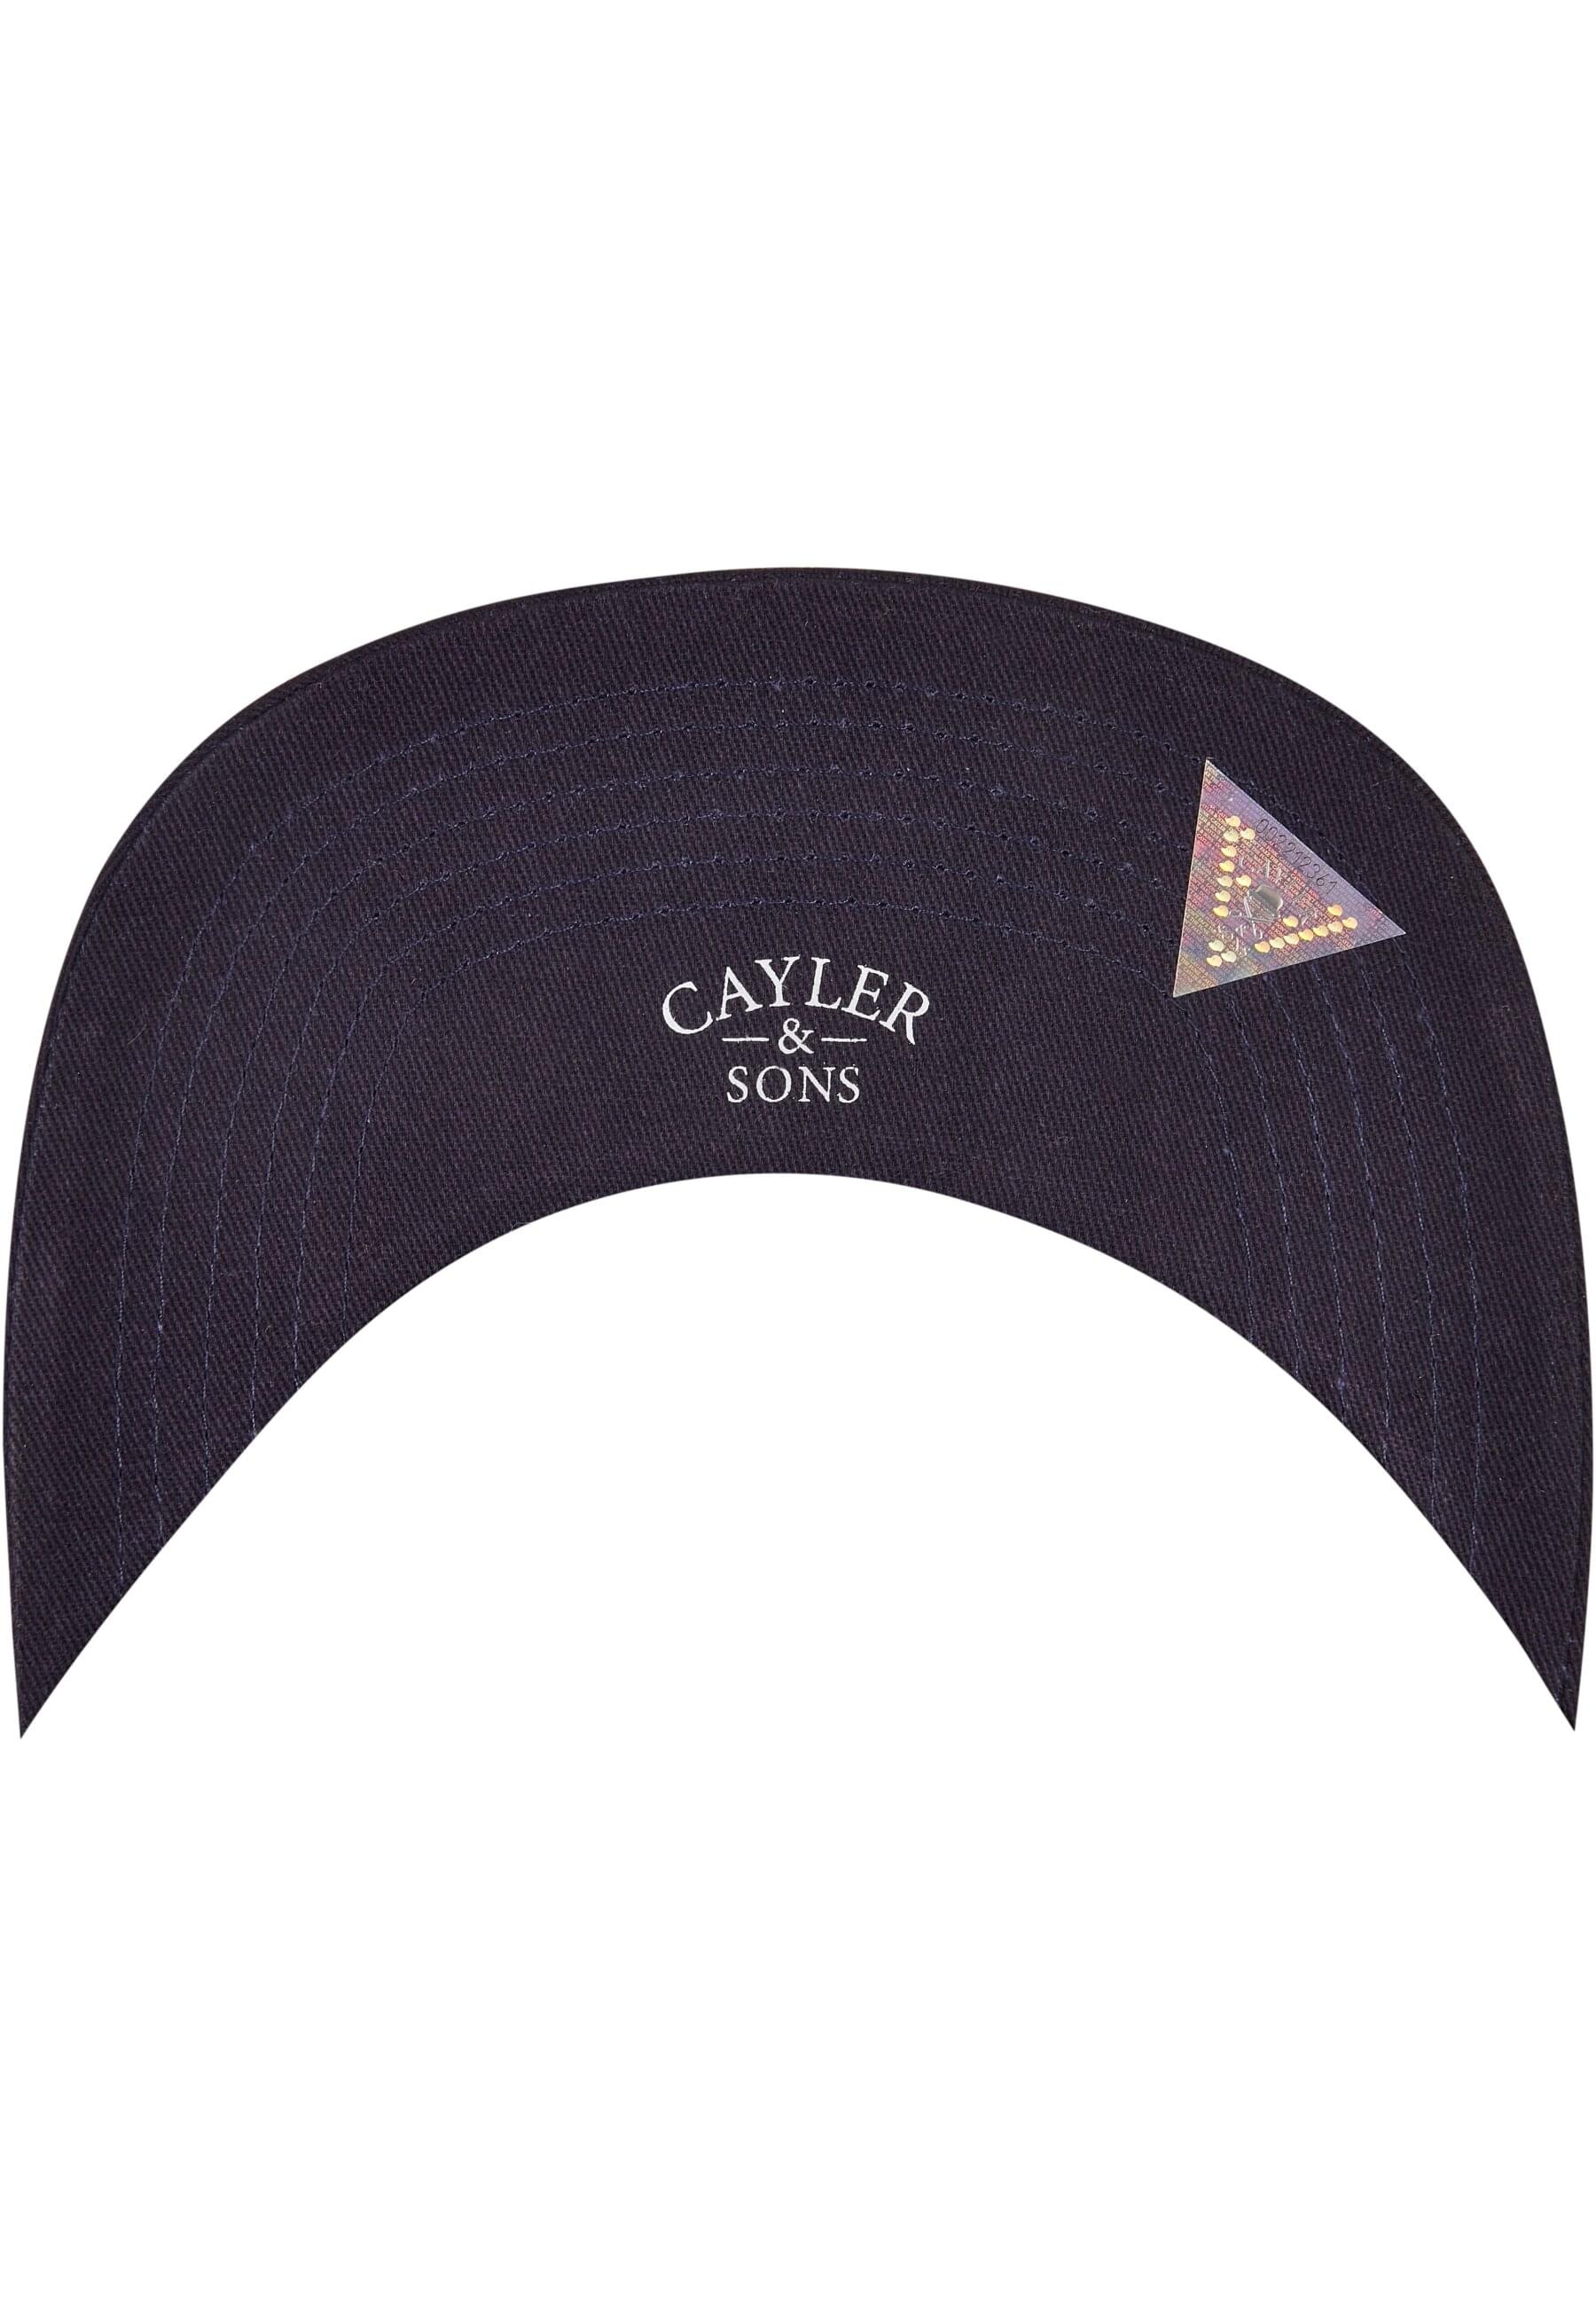 CAYLER & SONS Flex Cap »Cayler & Sons Herren Streets of NYC Cap«